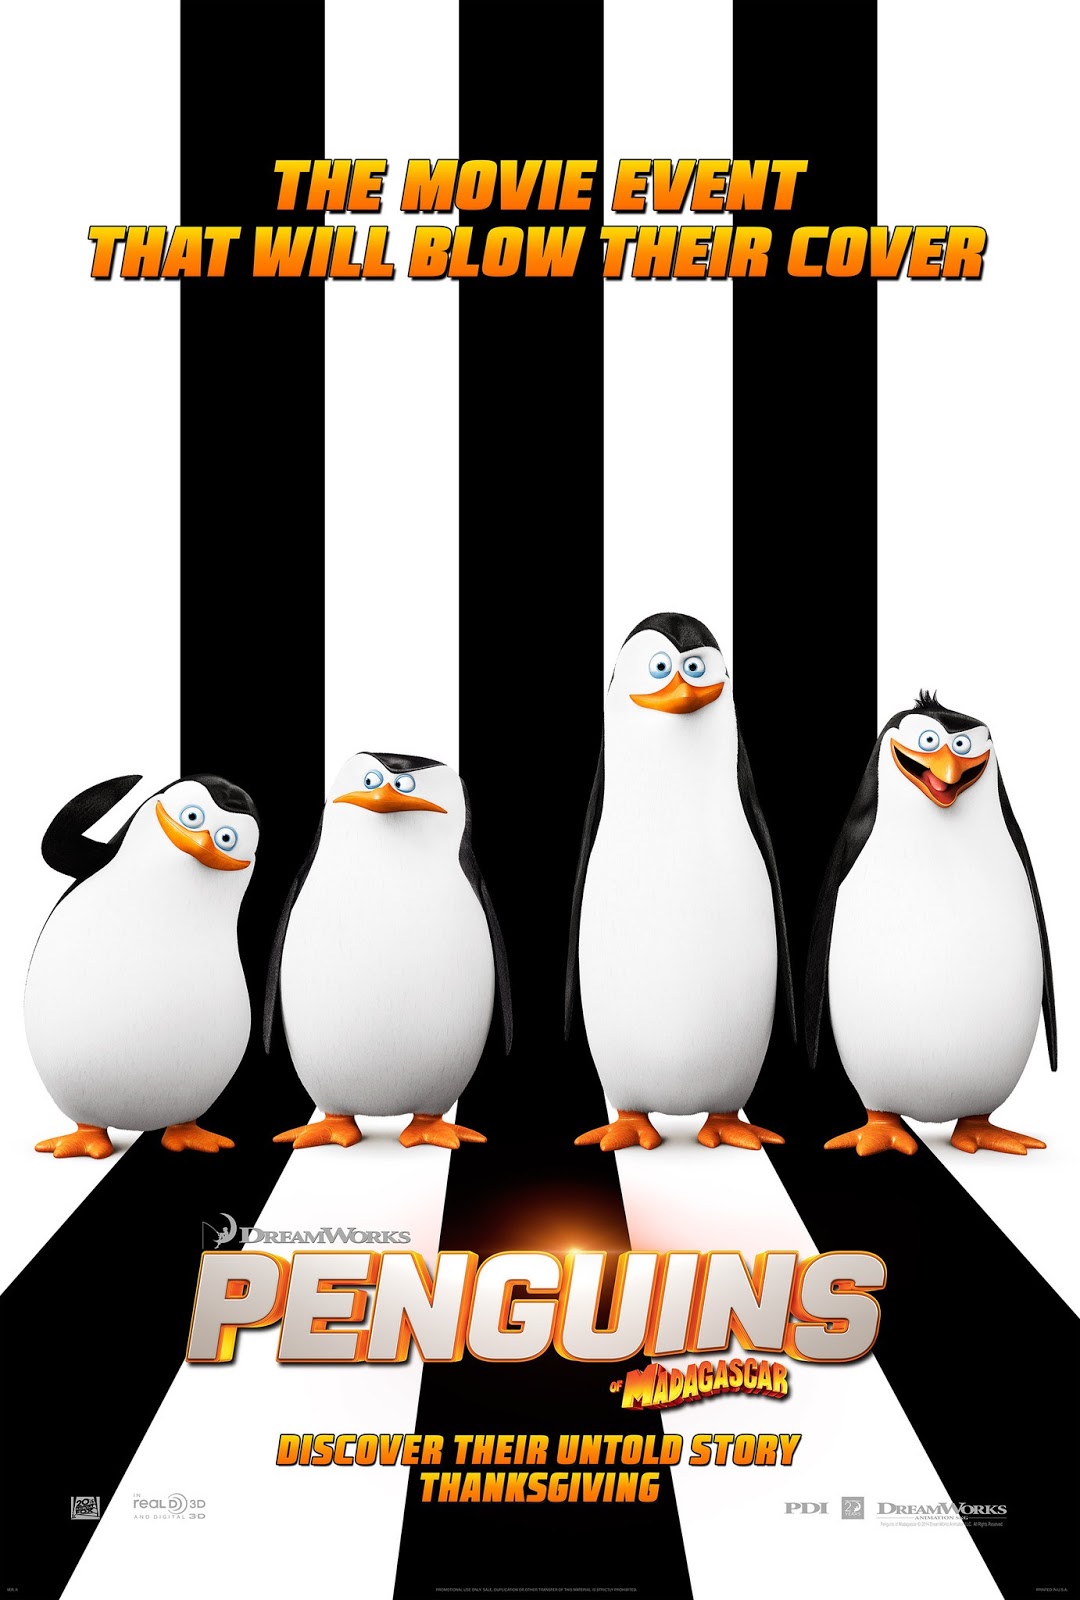 ｃｉａ こちら映画中央情報局です The Penguins Of Madagascar ドイツ映画界の鬼才ヴェルナー ヘルツォーク監督がカメオ出演した約4分半のオープニング シーンを ドリームワークス アニメの最新作 ザ ペンギンズ オブ マダガスカル がリリース